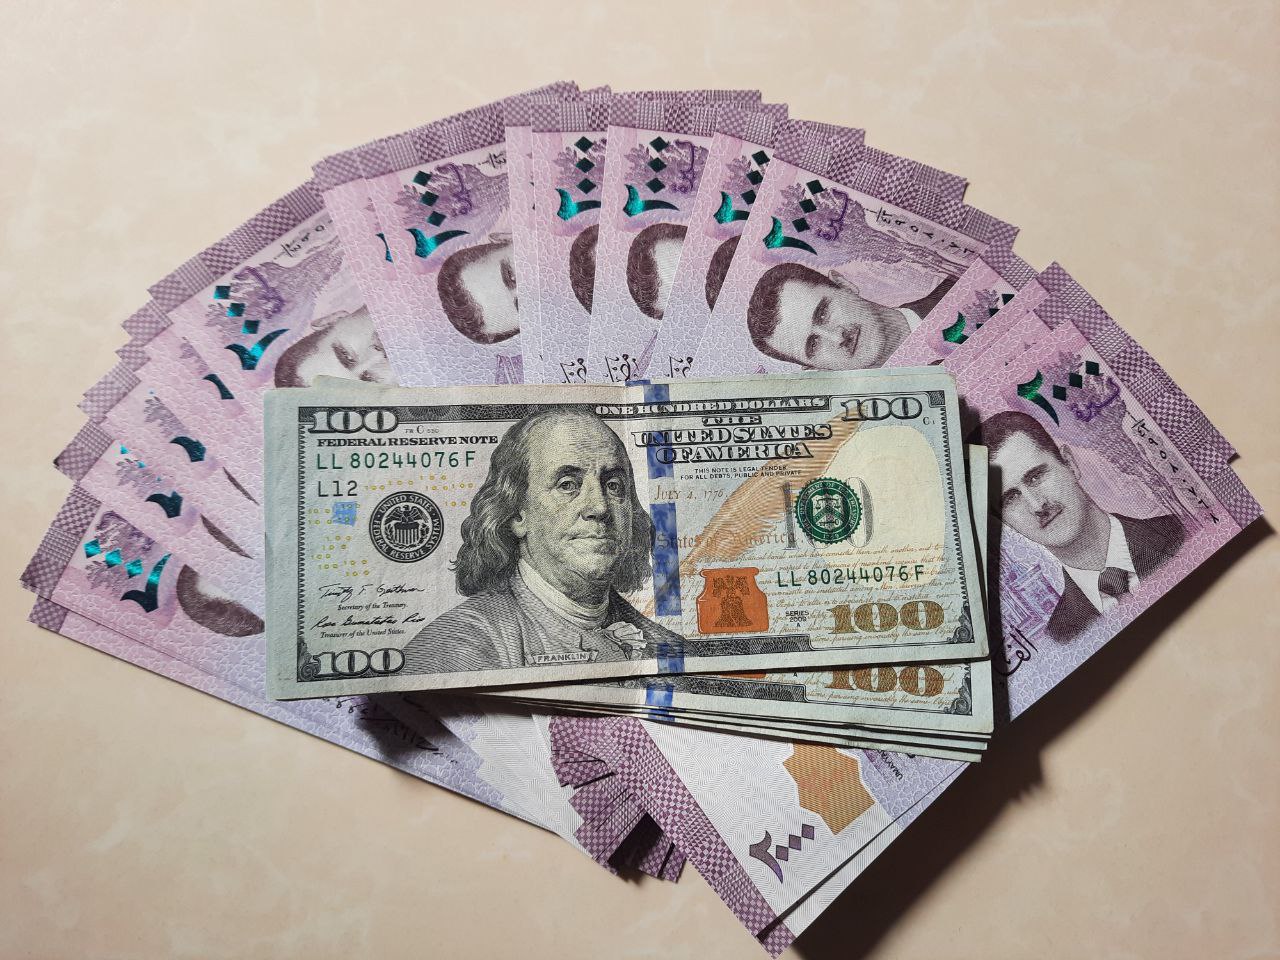 مصرف سوريا المركزي يحدد سعر الصرف بـ 3015 ليرة سورية للدولار الواحد